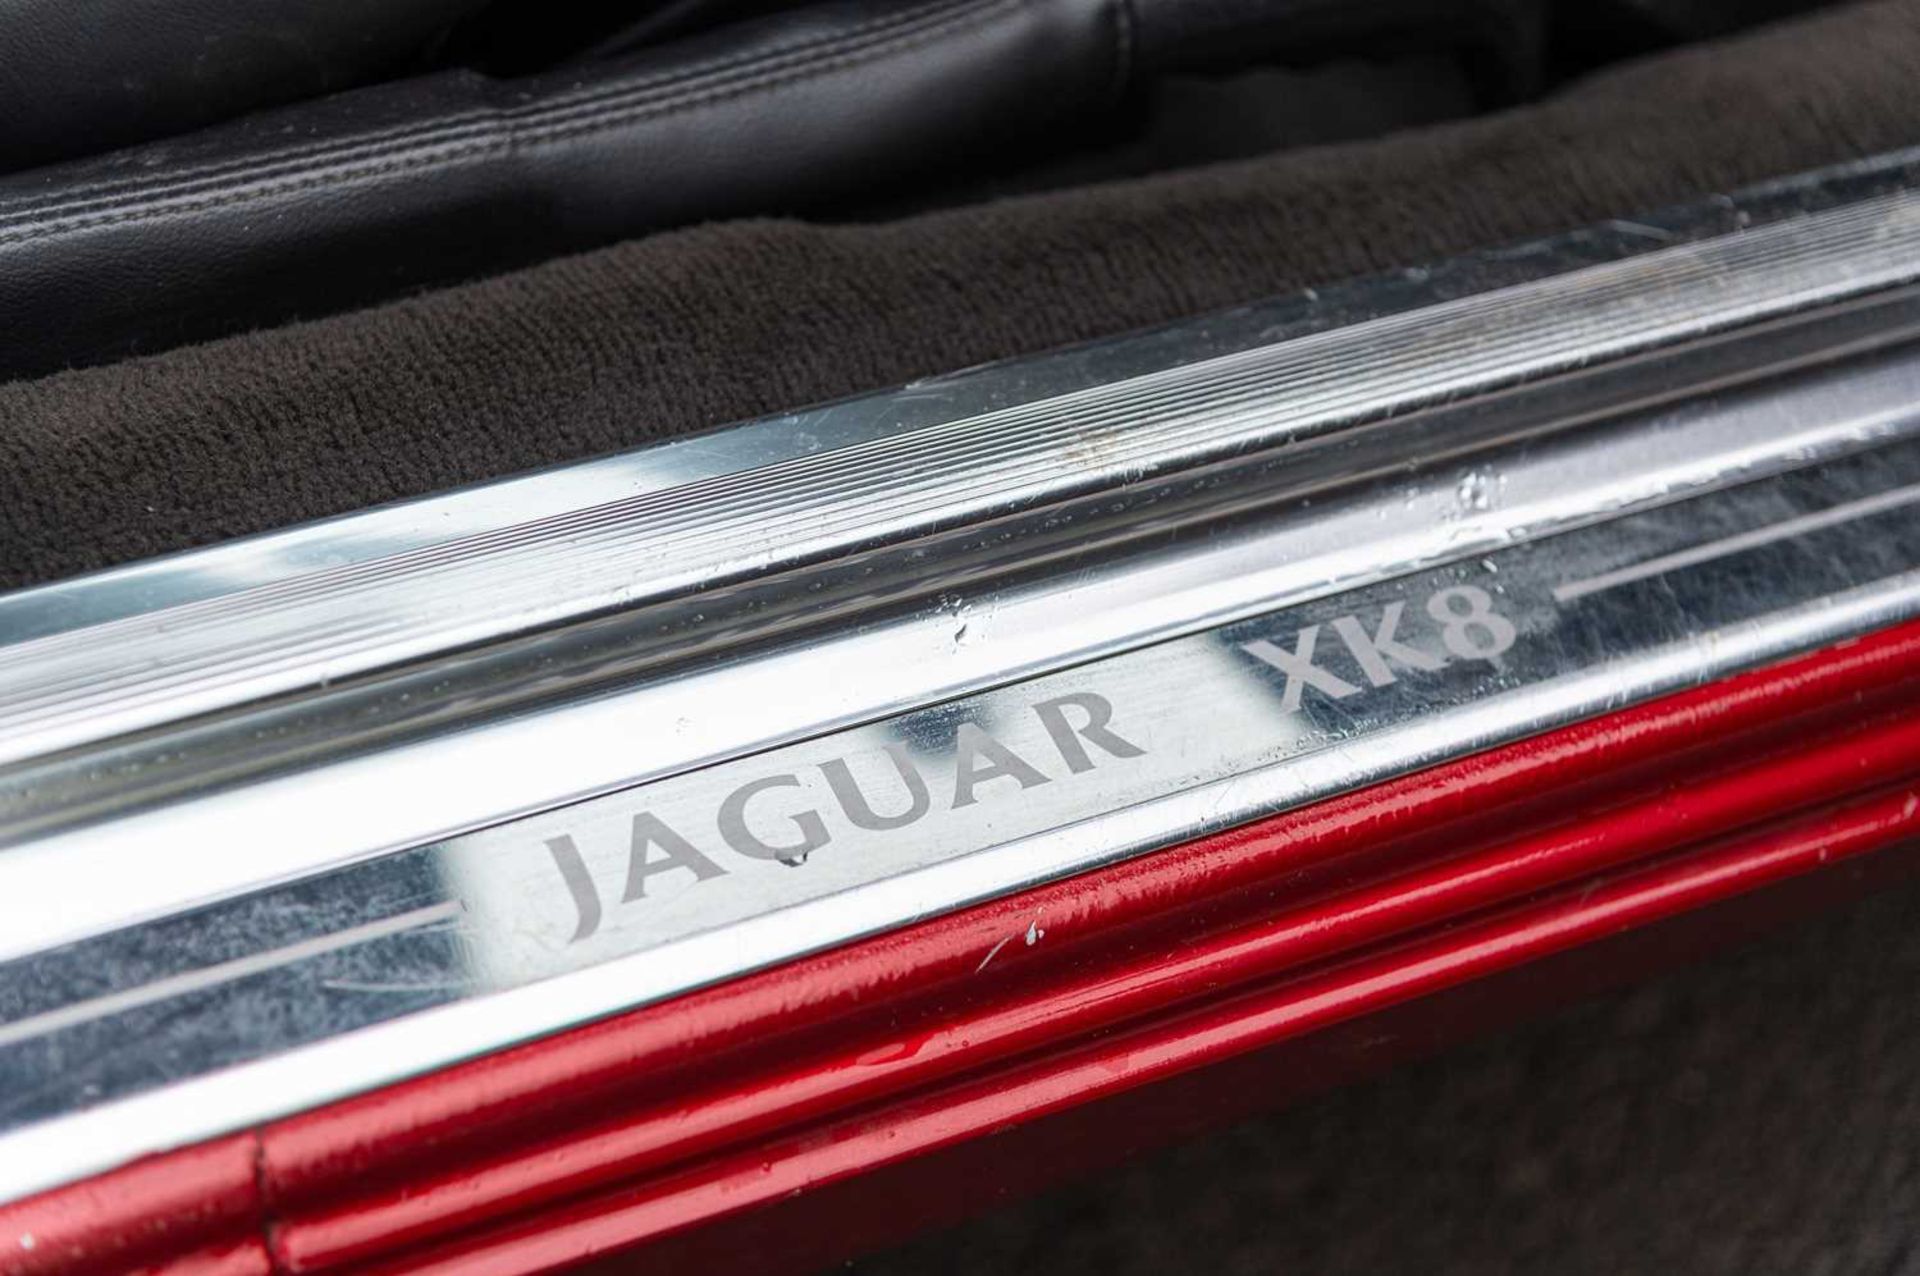 2002 Jaguar XK8 - Image 36 of 72